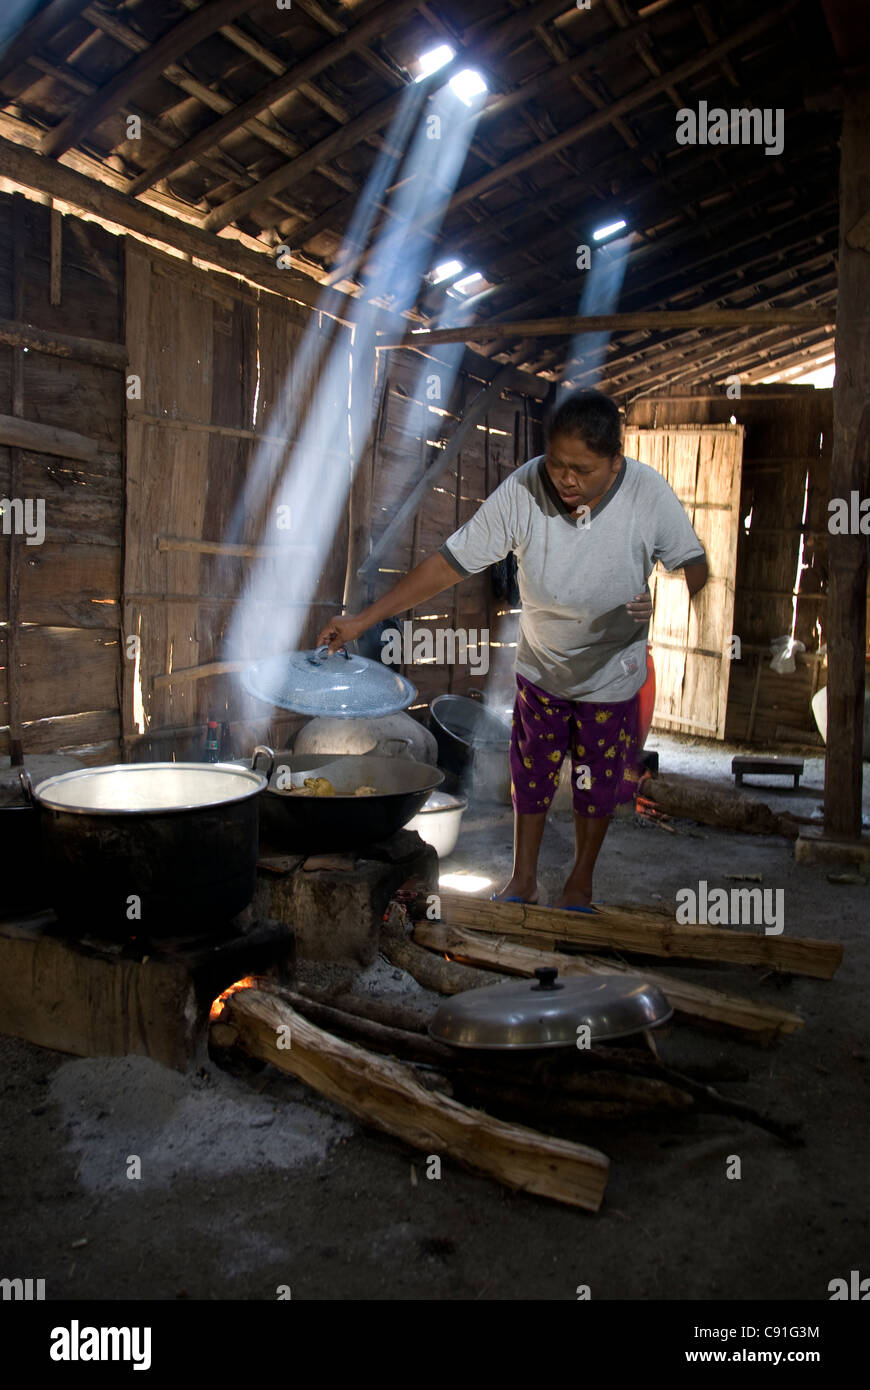 Frau in der Hütte, die in Töpfen auf einem offenen Holzofen kocht, wobei Sonnenlicht durch das Dach kommt, Dorf Randublatung, in der Nähe von CEPU, Zentral-Java, Indonesien Stockfoto